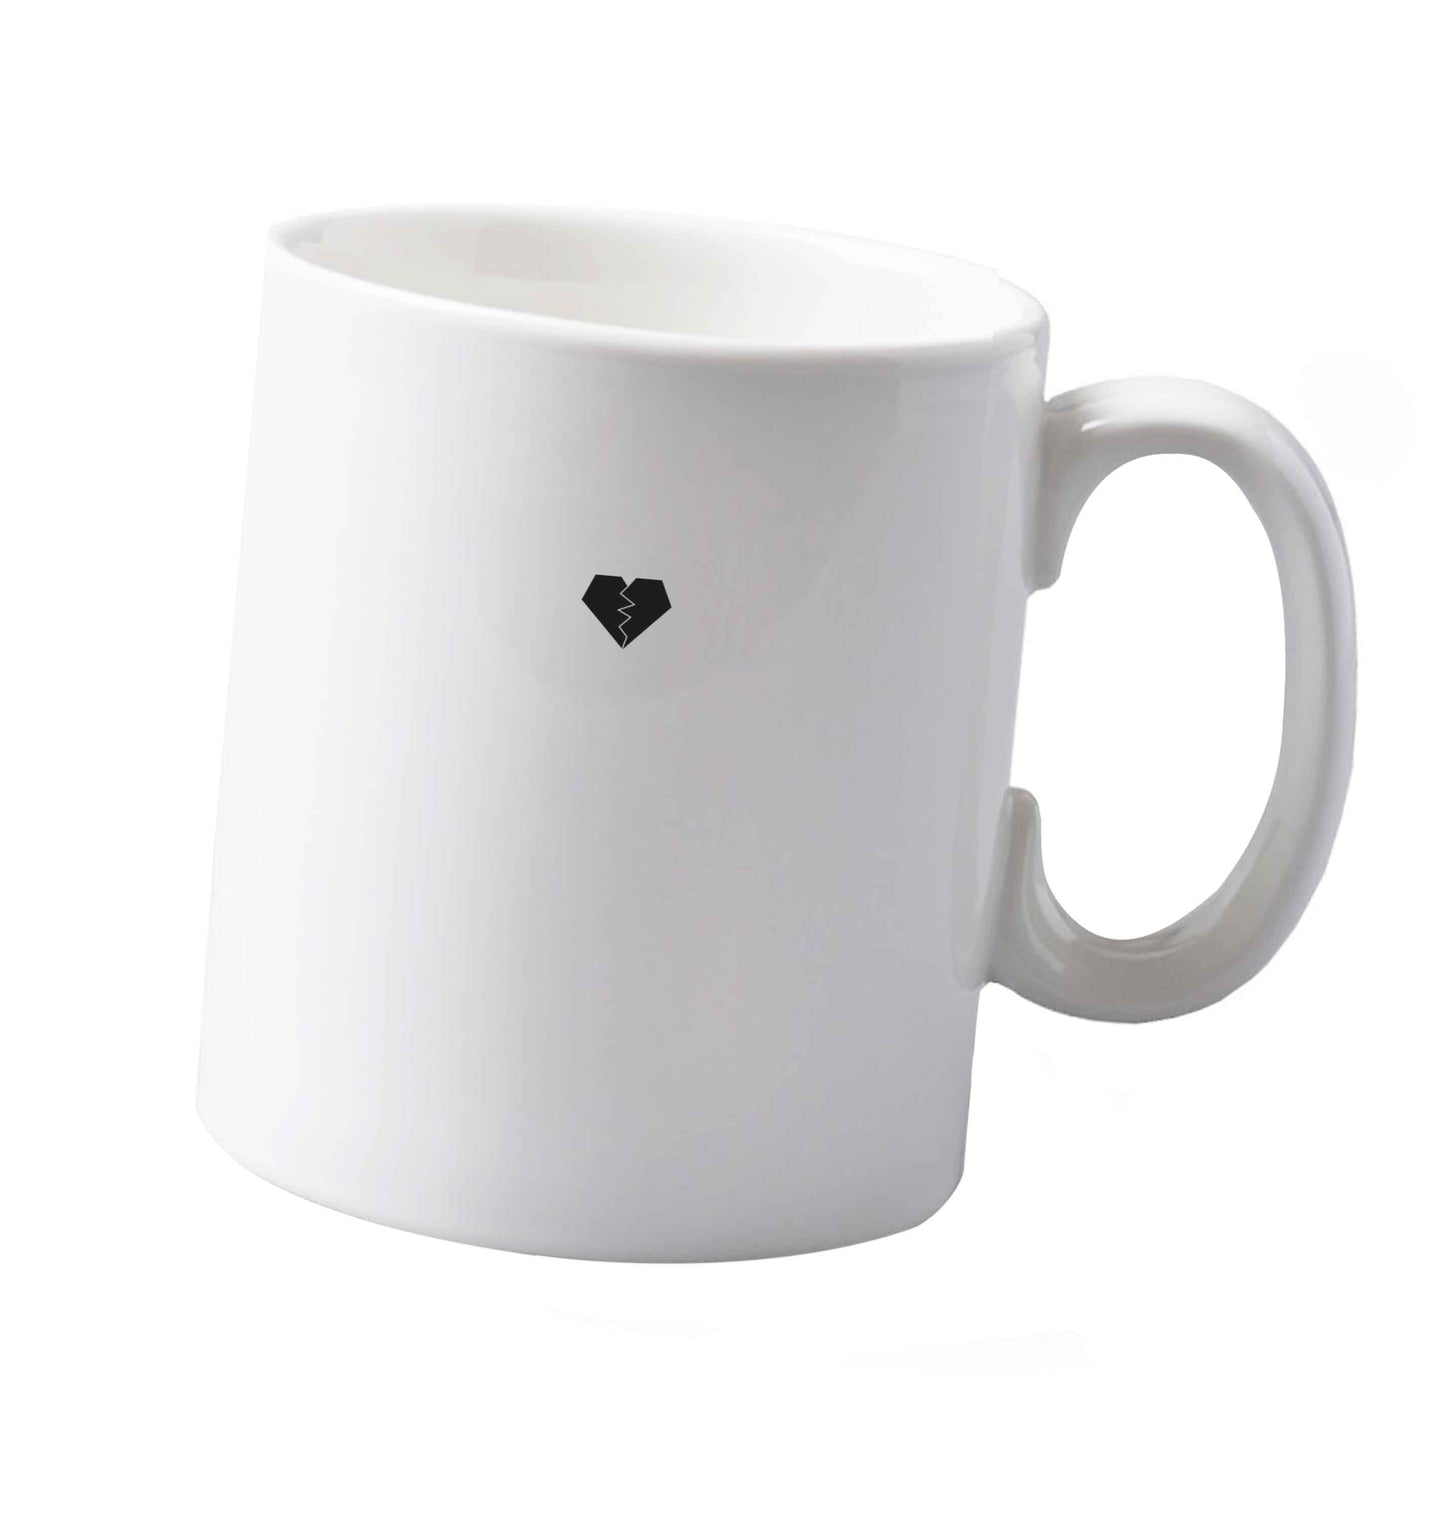 10 oz Tiny broken heart ceramic mug both sides